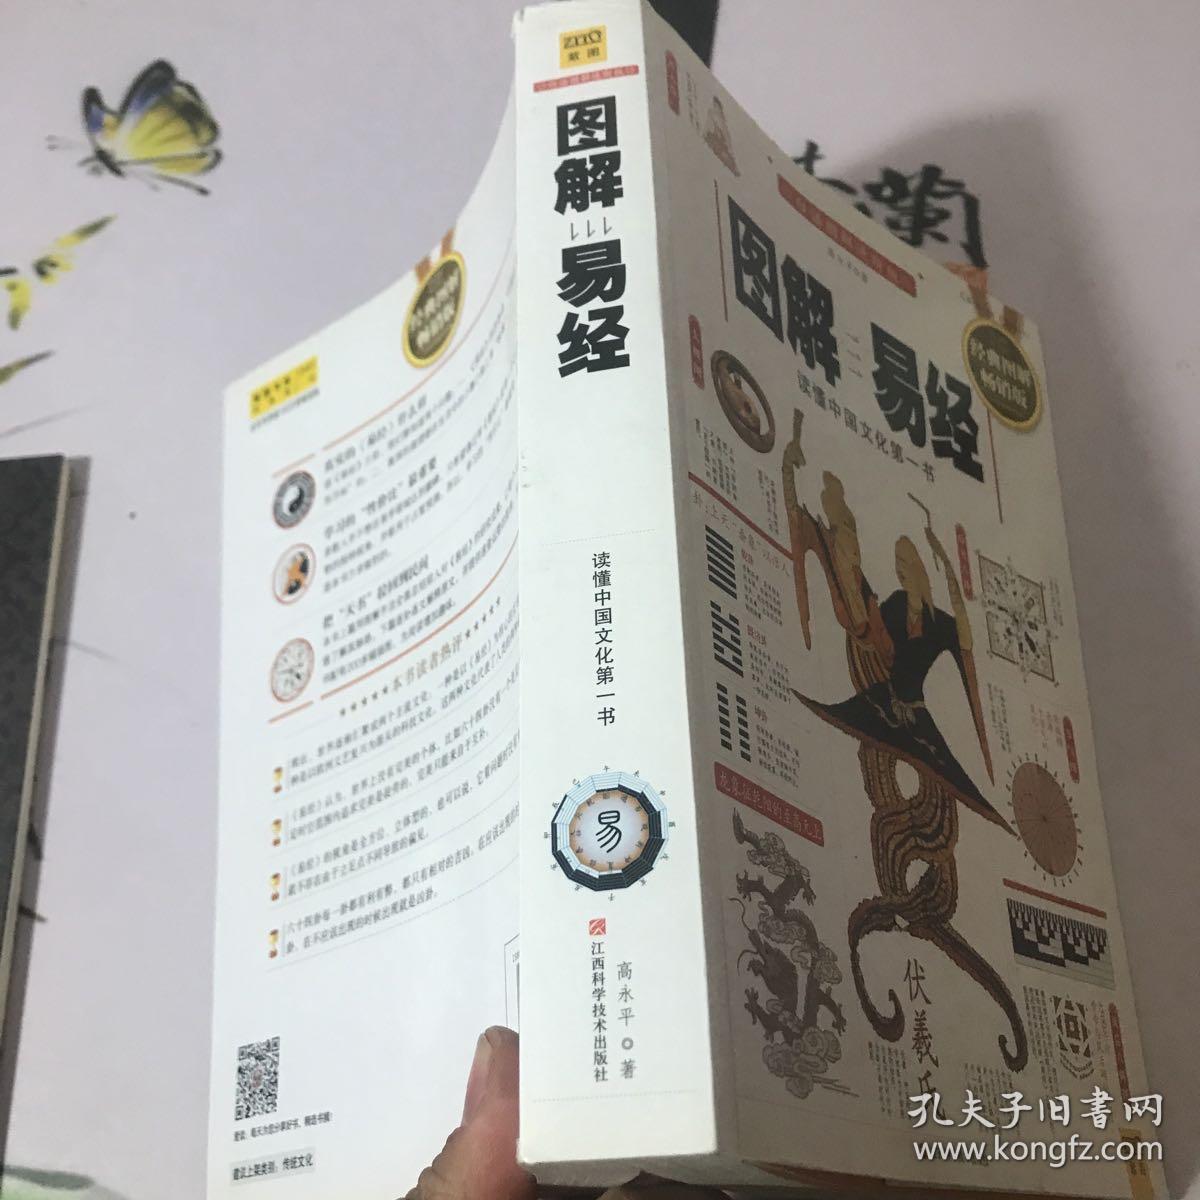 图解易经：读懂中国文化第一书（经典图解畅销版）